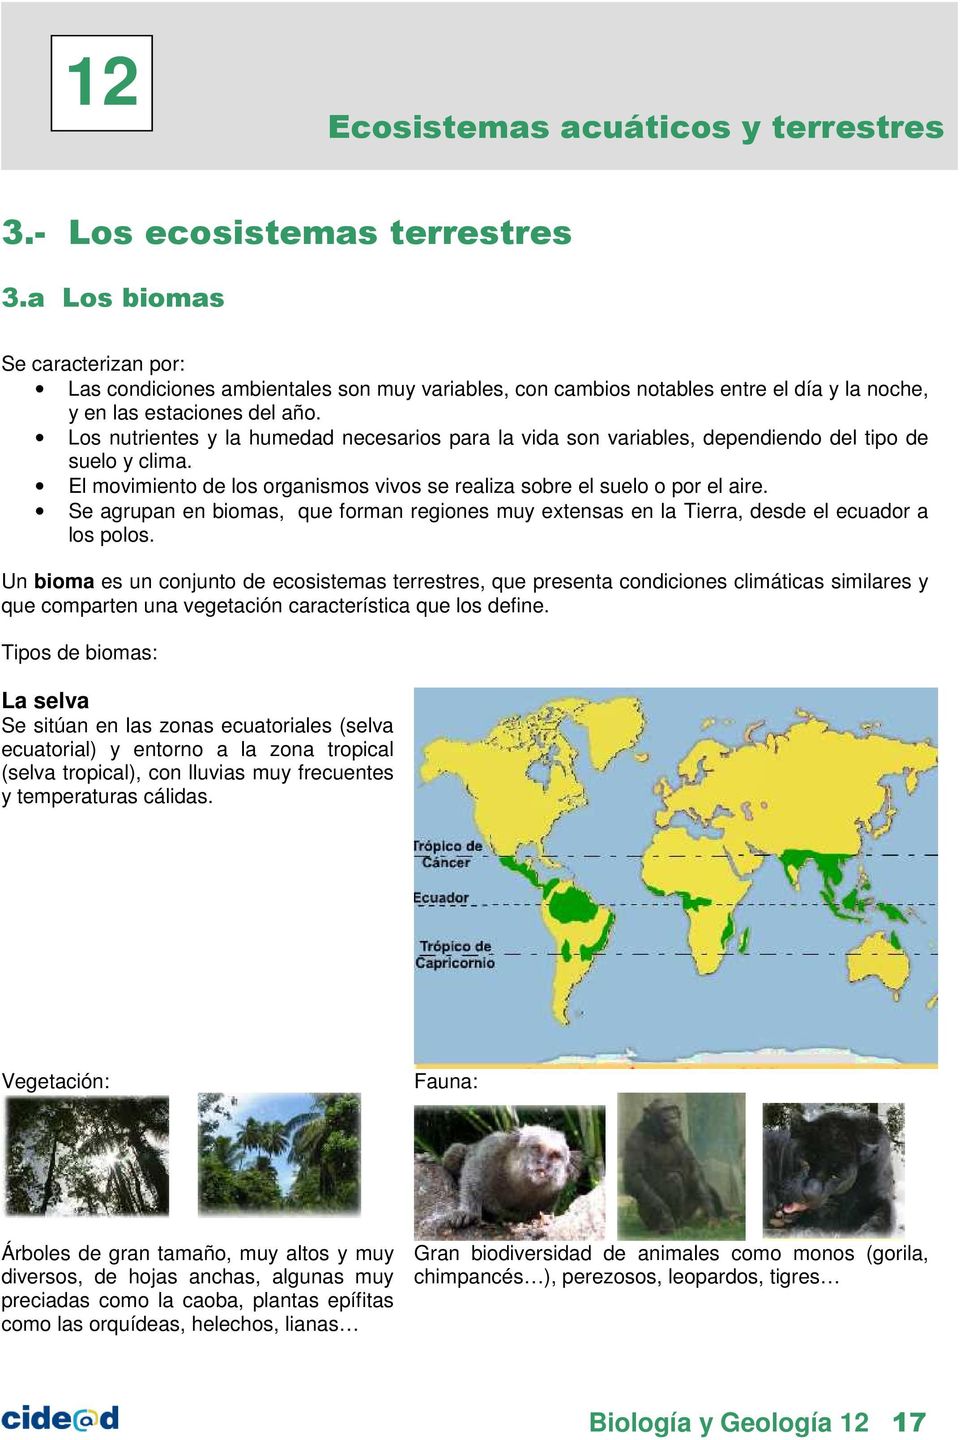 12 Ecosistemas Acuaticos Y Terrestres Pdf Free Download